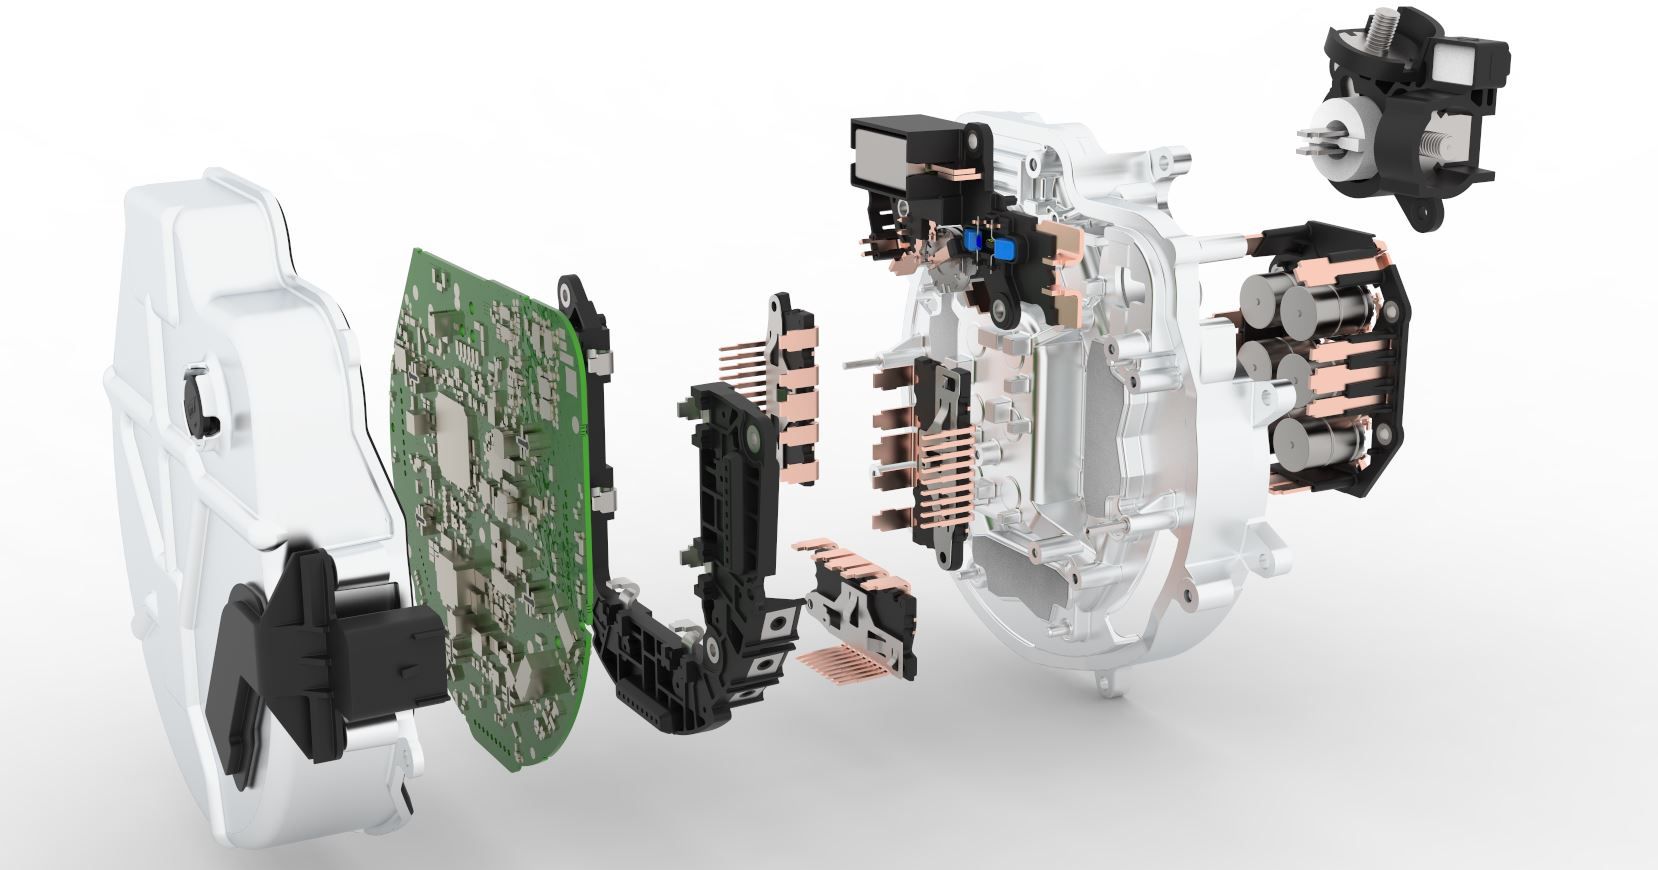 eMotor 48V power inverter for car hybridation by Valeo